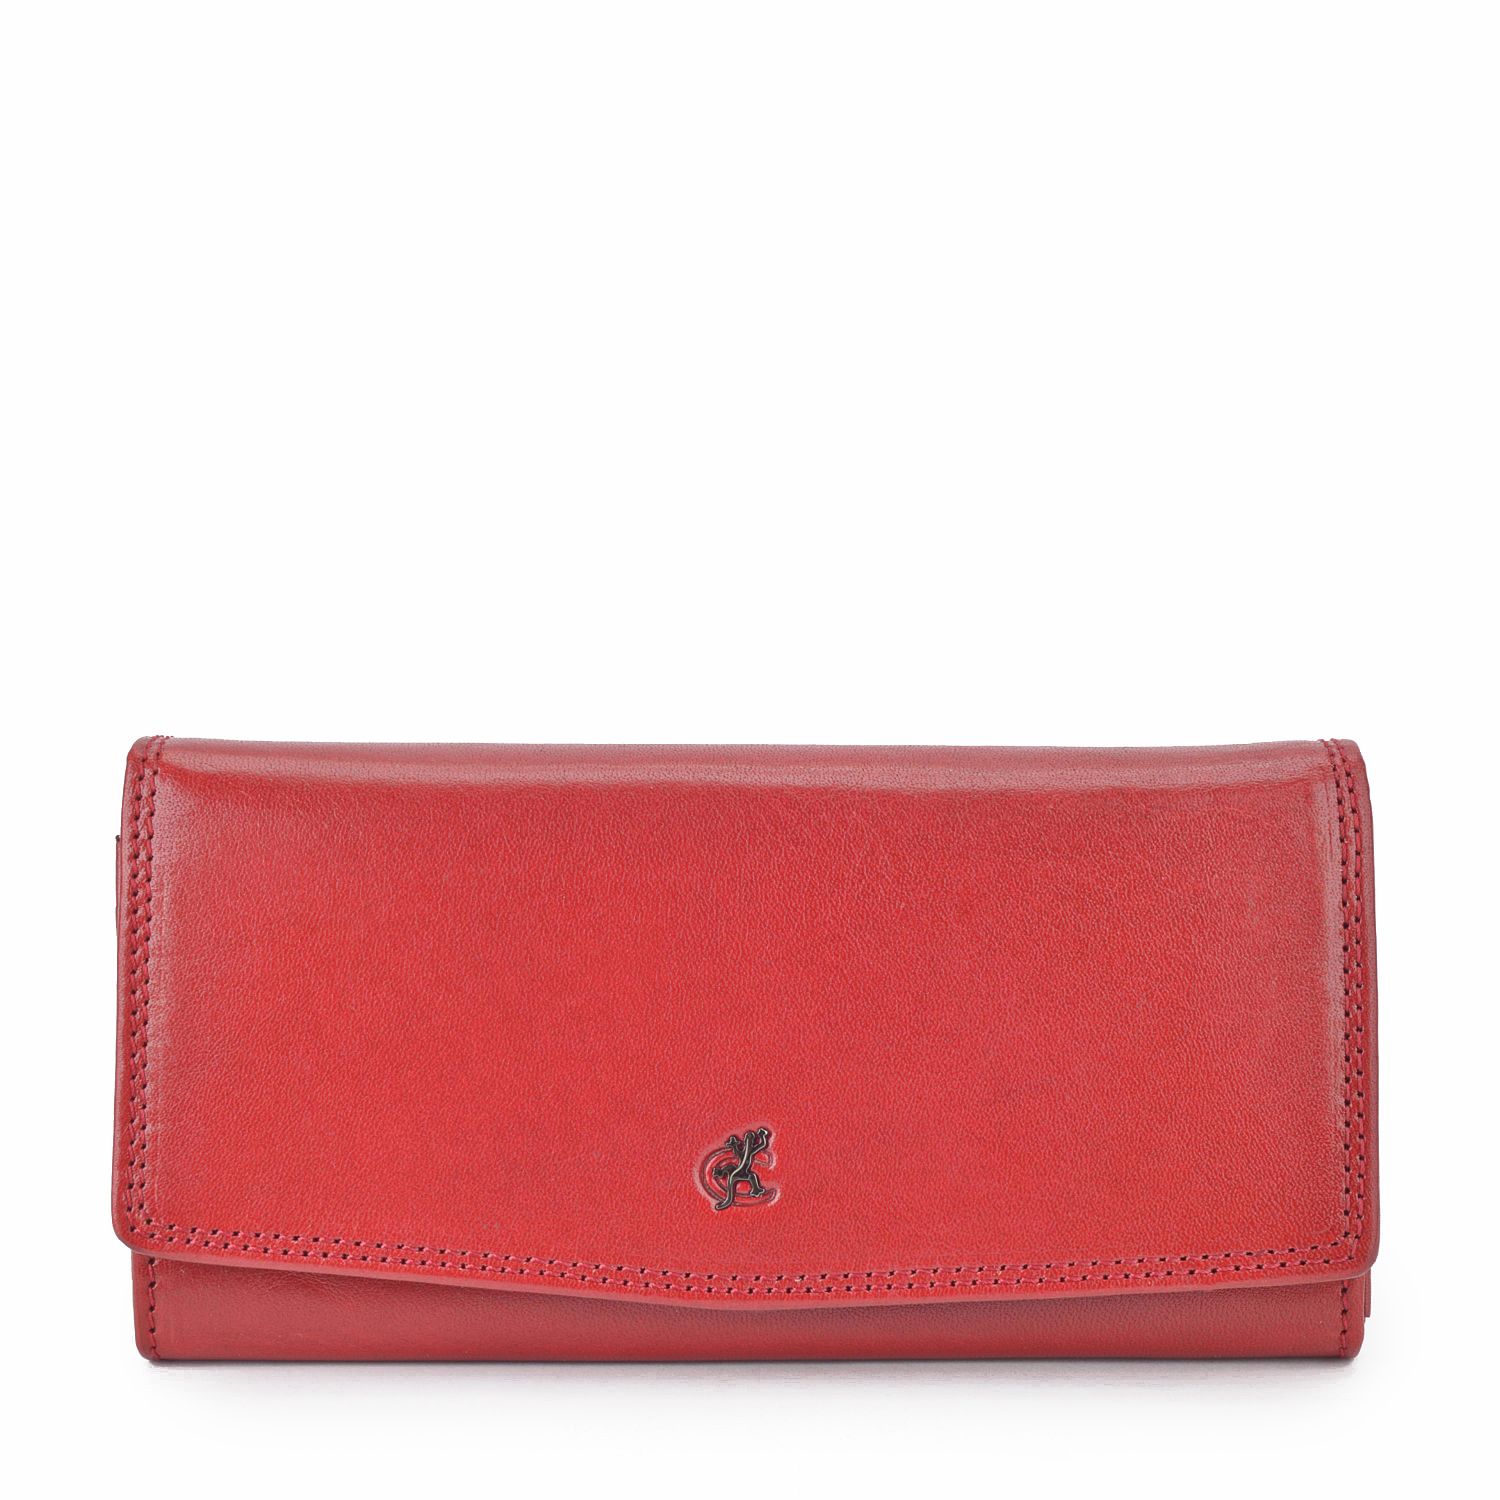 Červená kožená dámská peněženka Cosset Komodo 4466